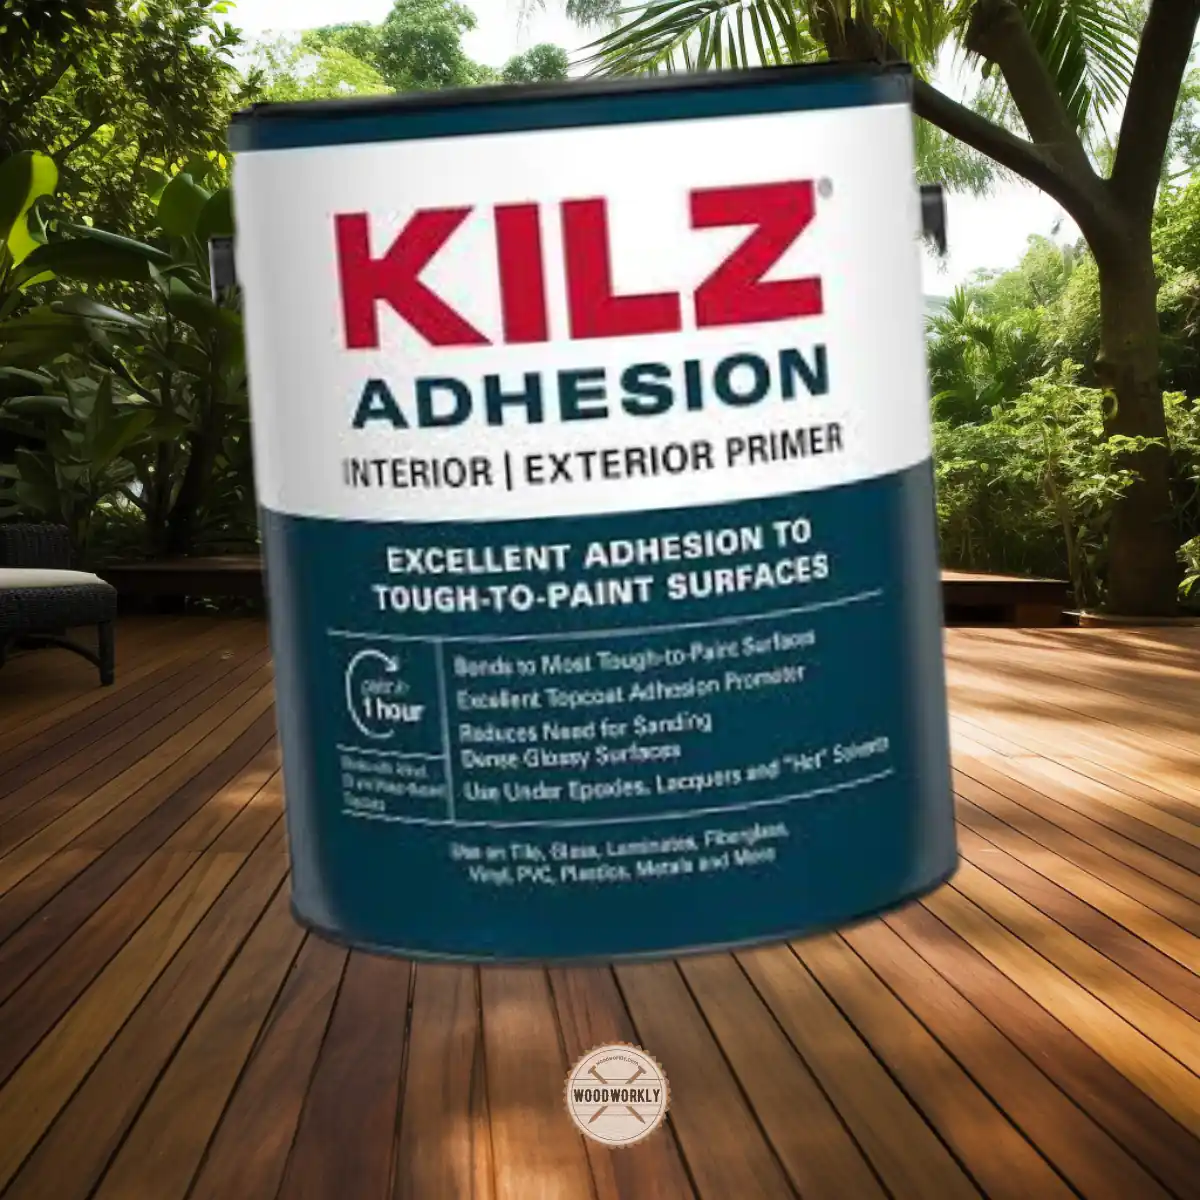 KILZ Adhesion Primer